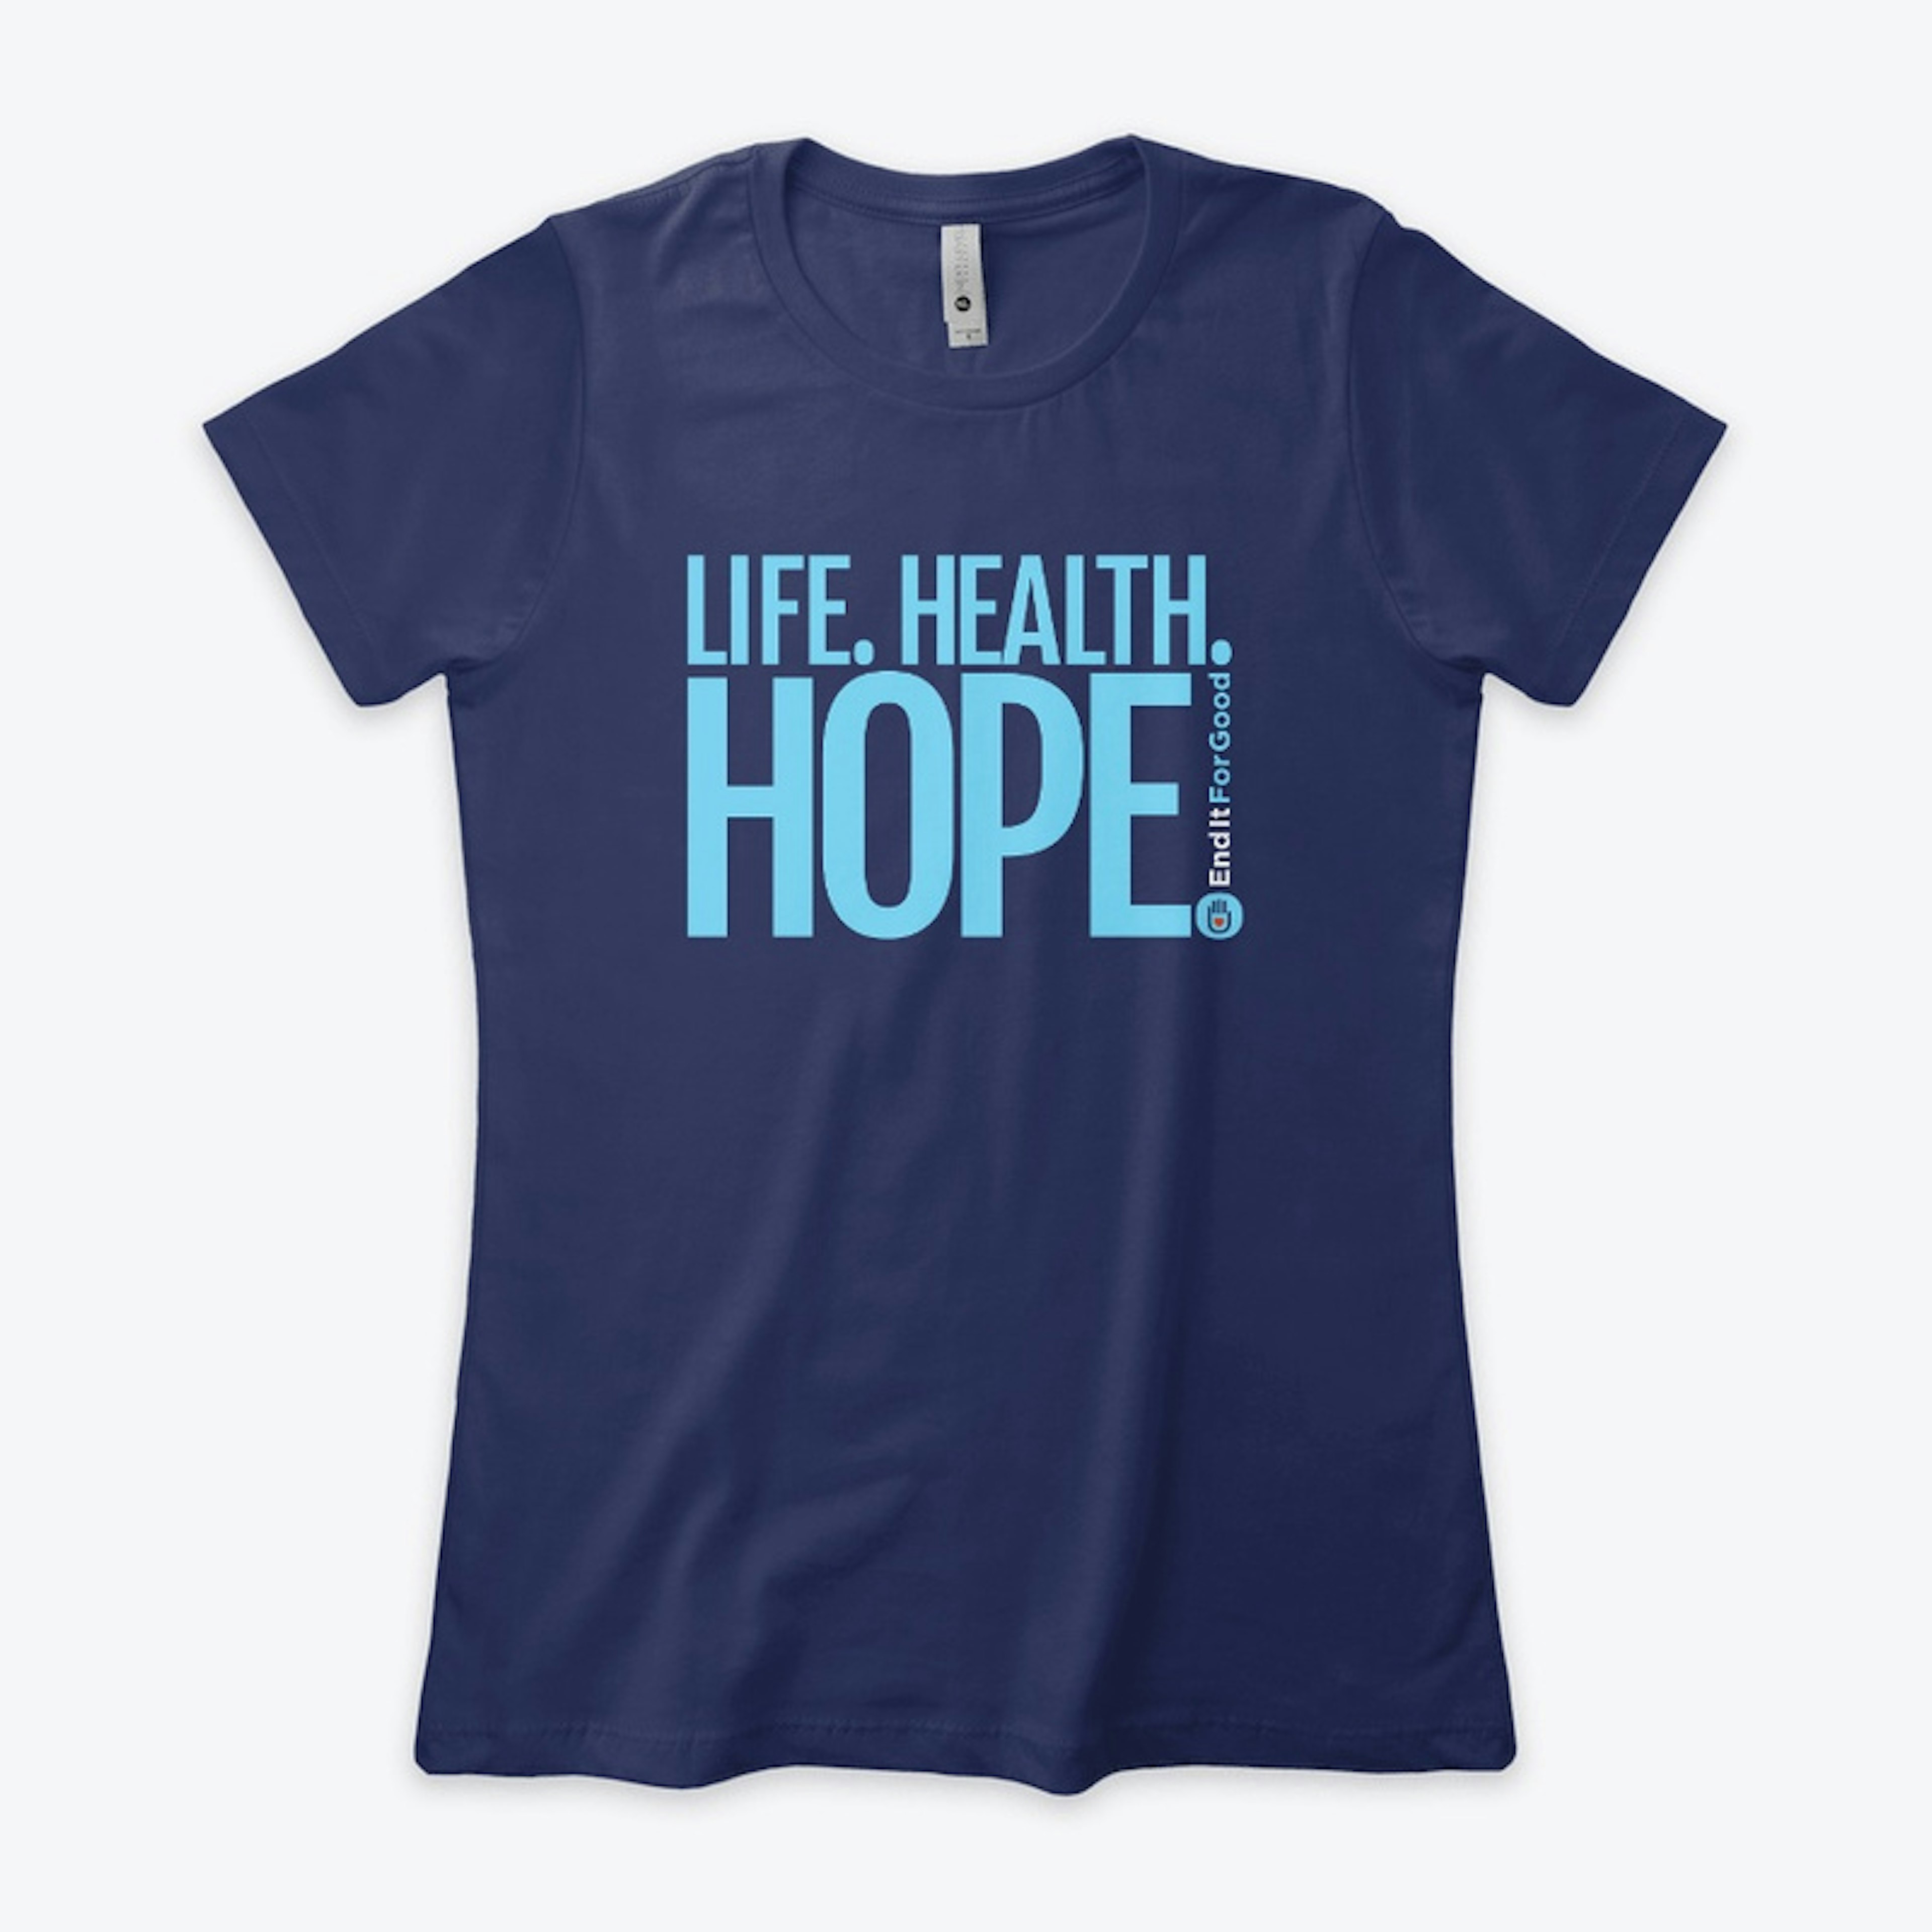 "Life Help Hope" Women's Tee- Horizontal